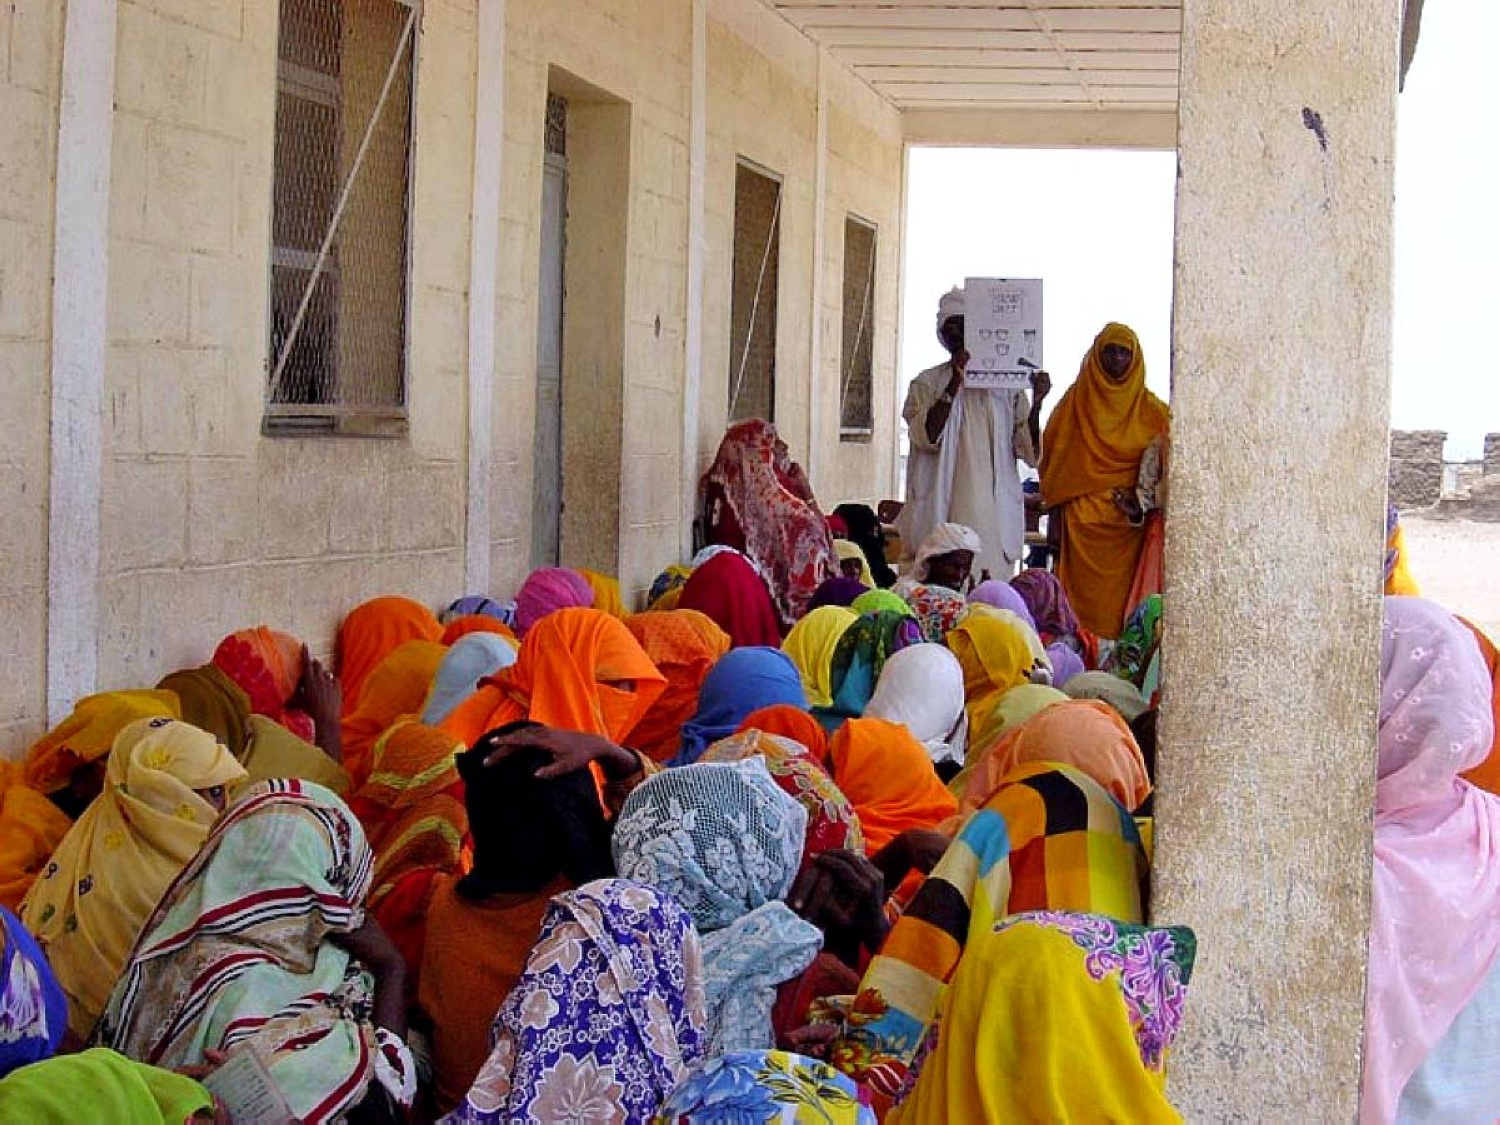 사헬(Sahel) 지역 이슬람 극단주의 테러활동의 현황과 전망 